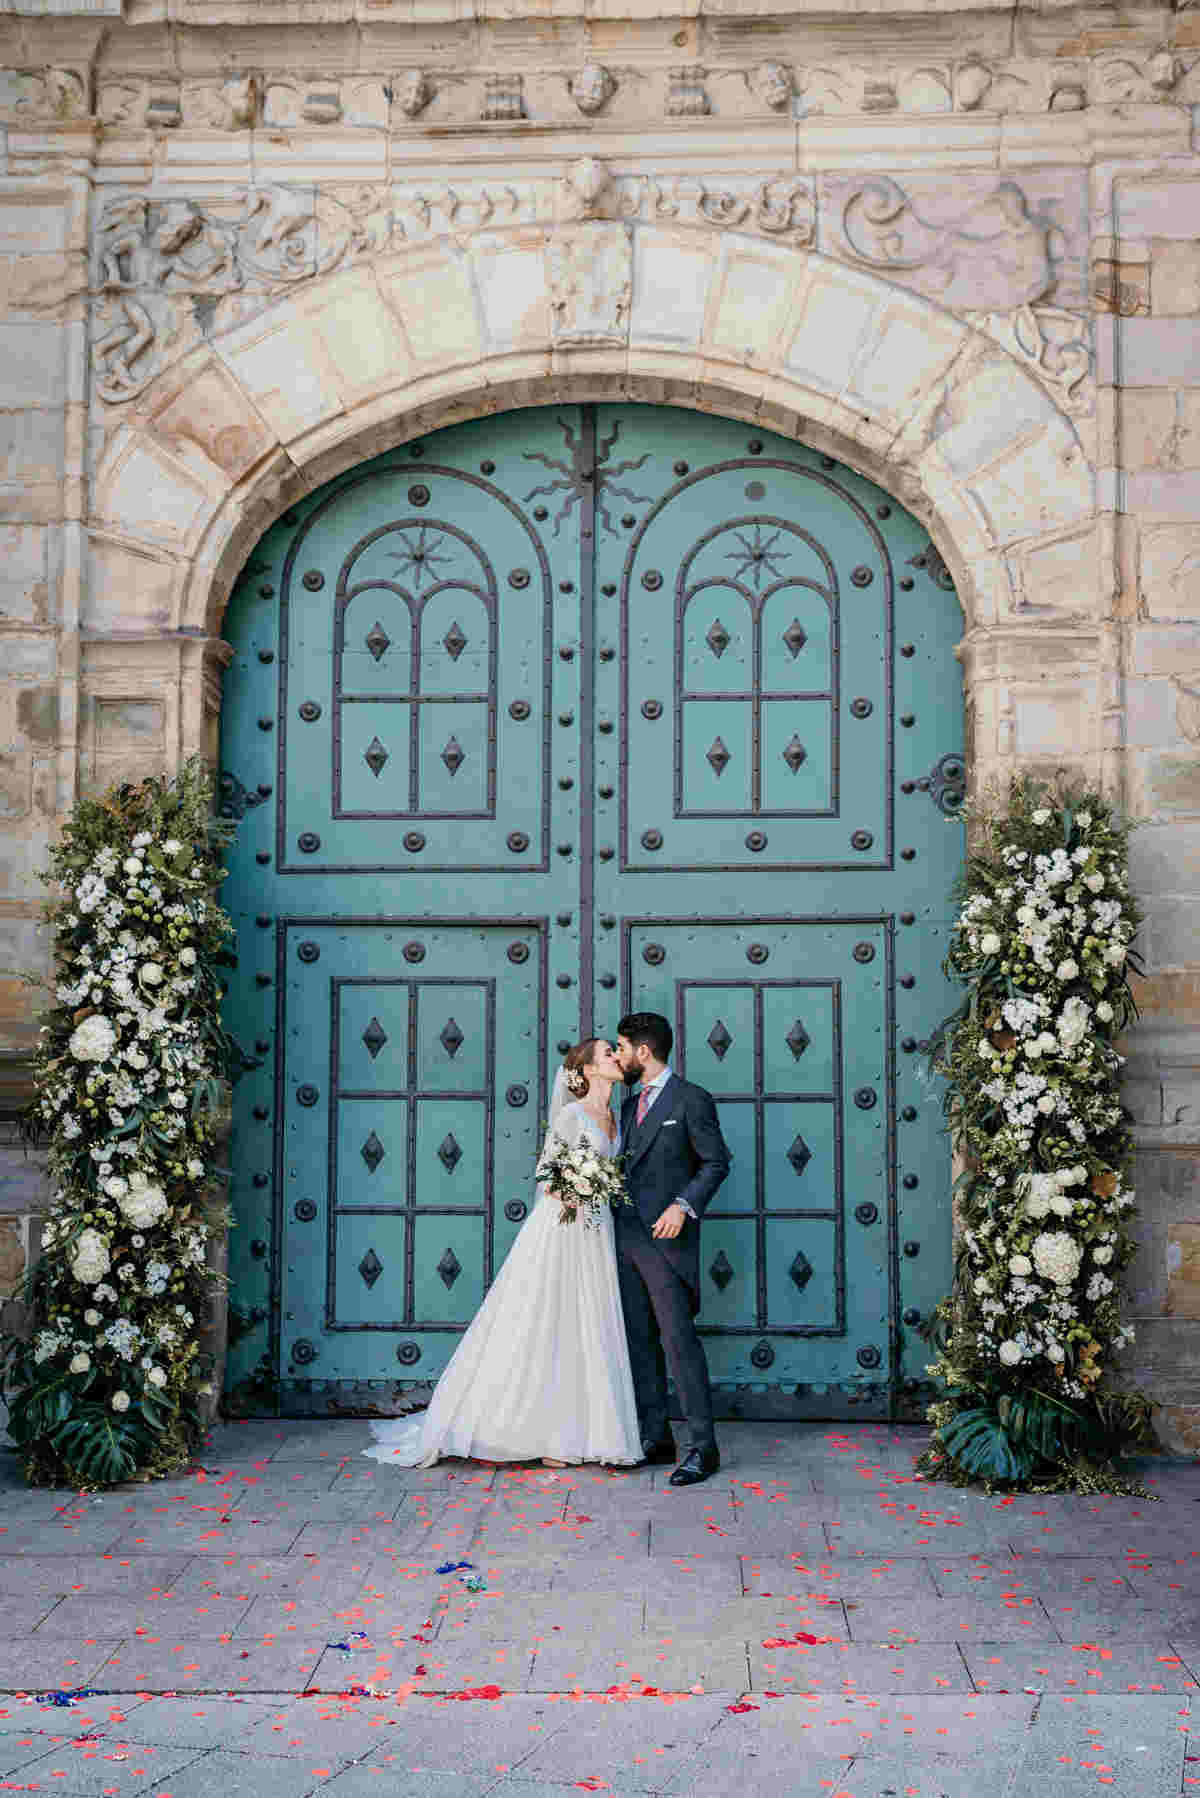 La novia de la puerta azul - Las bodas de Tatín